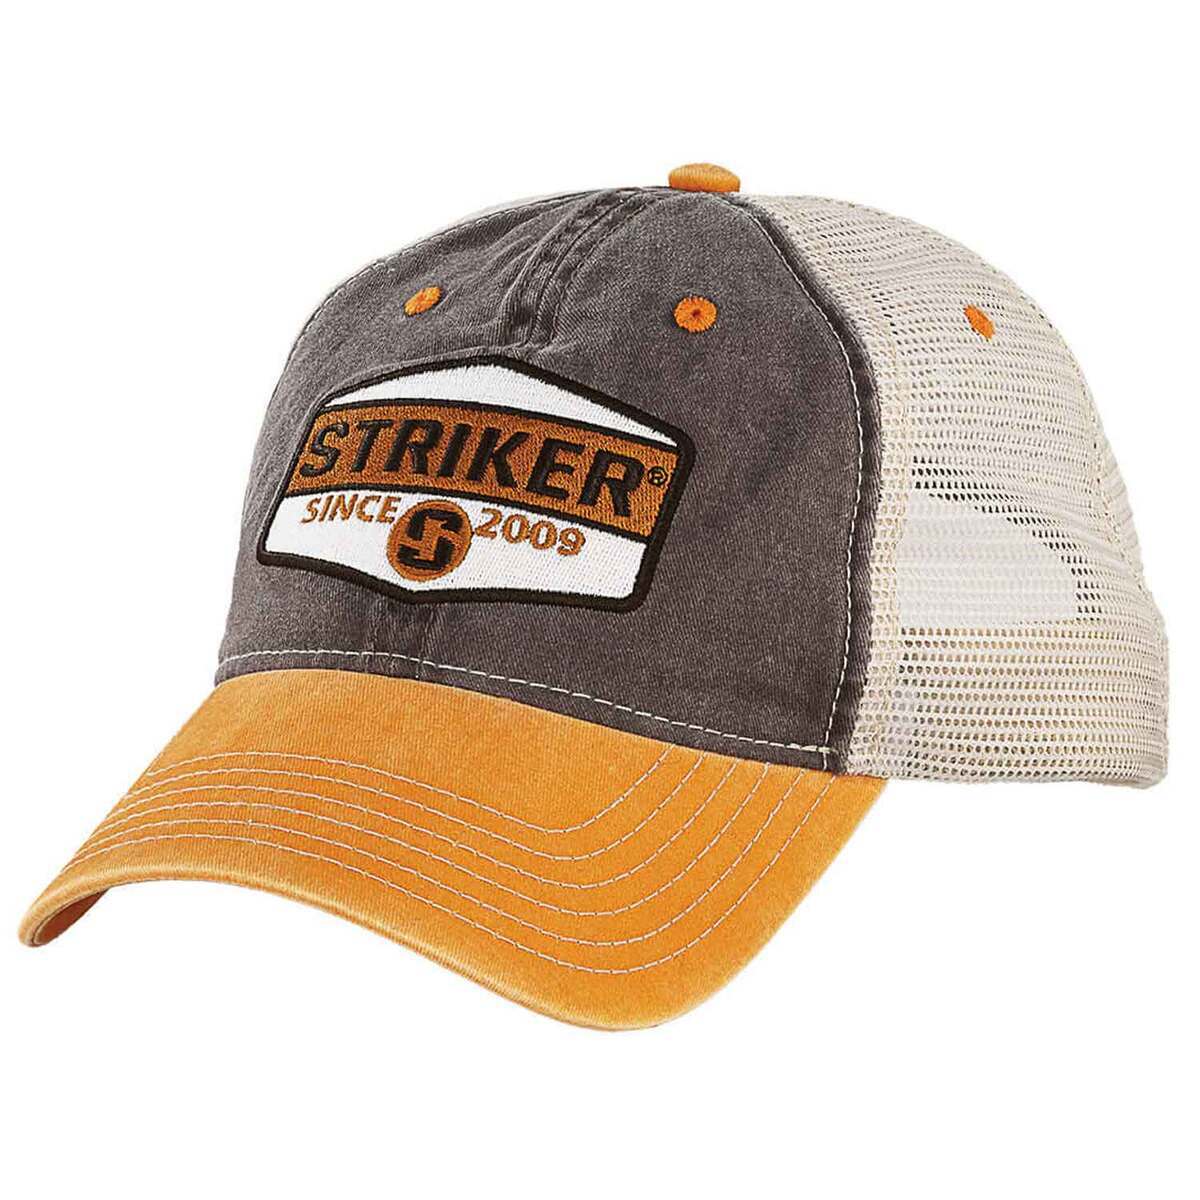 https://www.sportsmans.com/medias/striker-ice-atlas-trucker-hat-orangebrown-one-size-fits-most-1795476-1.jpg?context=bWFzdGVyfGltYWdlc3wxNDQ0NTR8aW1hZ2UvanBlZ3xoNTgvaDJkLzExMDY5MTYyMTYwMTU4LzE3OTU0NzYtMV9iYXNlLWNvbnZlcnNpb25Gb3JtYXRfMTIwMC1jb252ZXJzaW9uRm9ybWF0fDcyNjg0OWI3NGY4NjkwZGI1OGU0MjQ1MTgwM2Q2ZmU1OTZhYjRhMTAyOTA4NDJkZTYzMDhmYjAyNWMxNTcxMGY